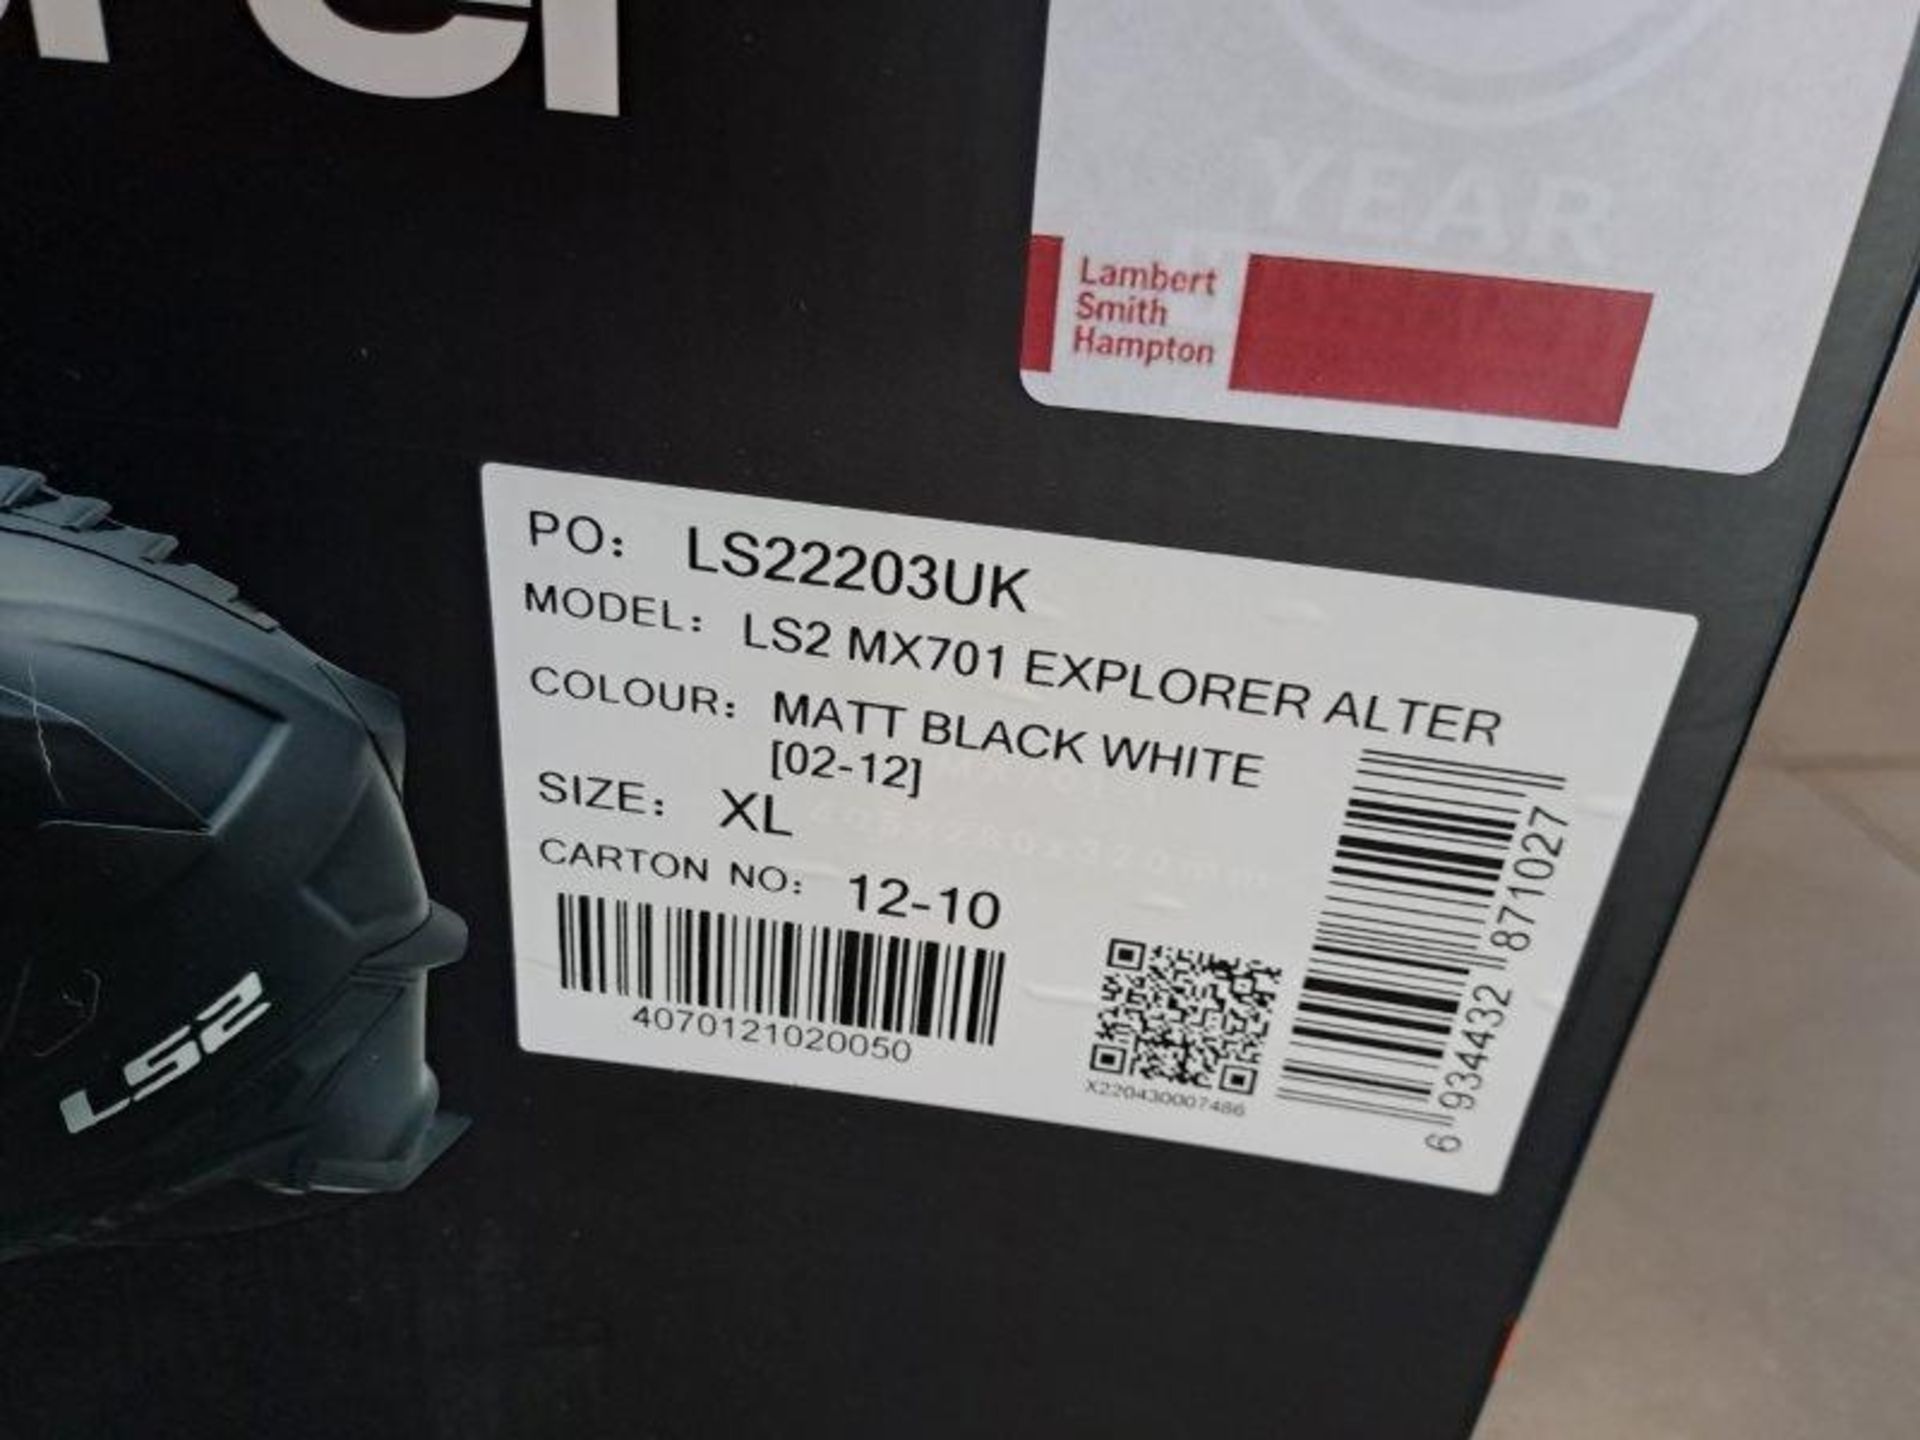 LS2 MX701 Explorer Alter XL Motorbike Helmet - Image 4 of 6